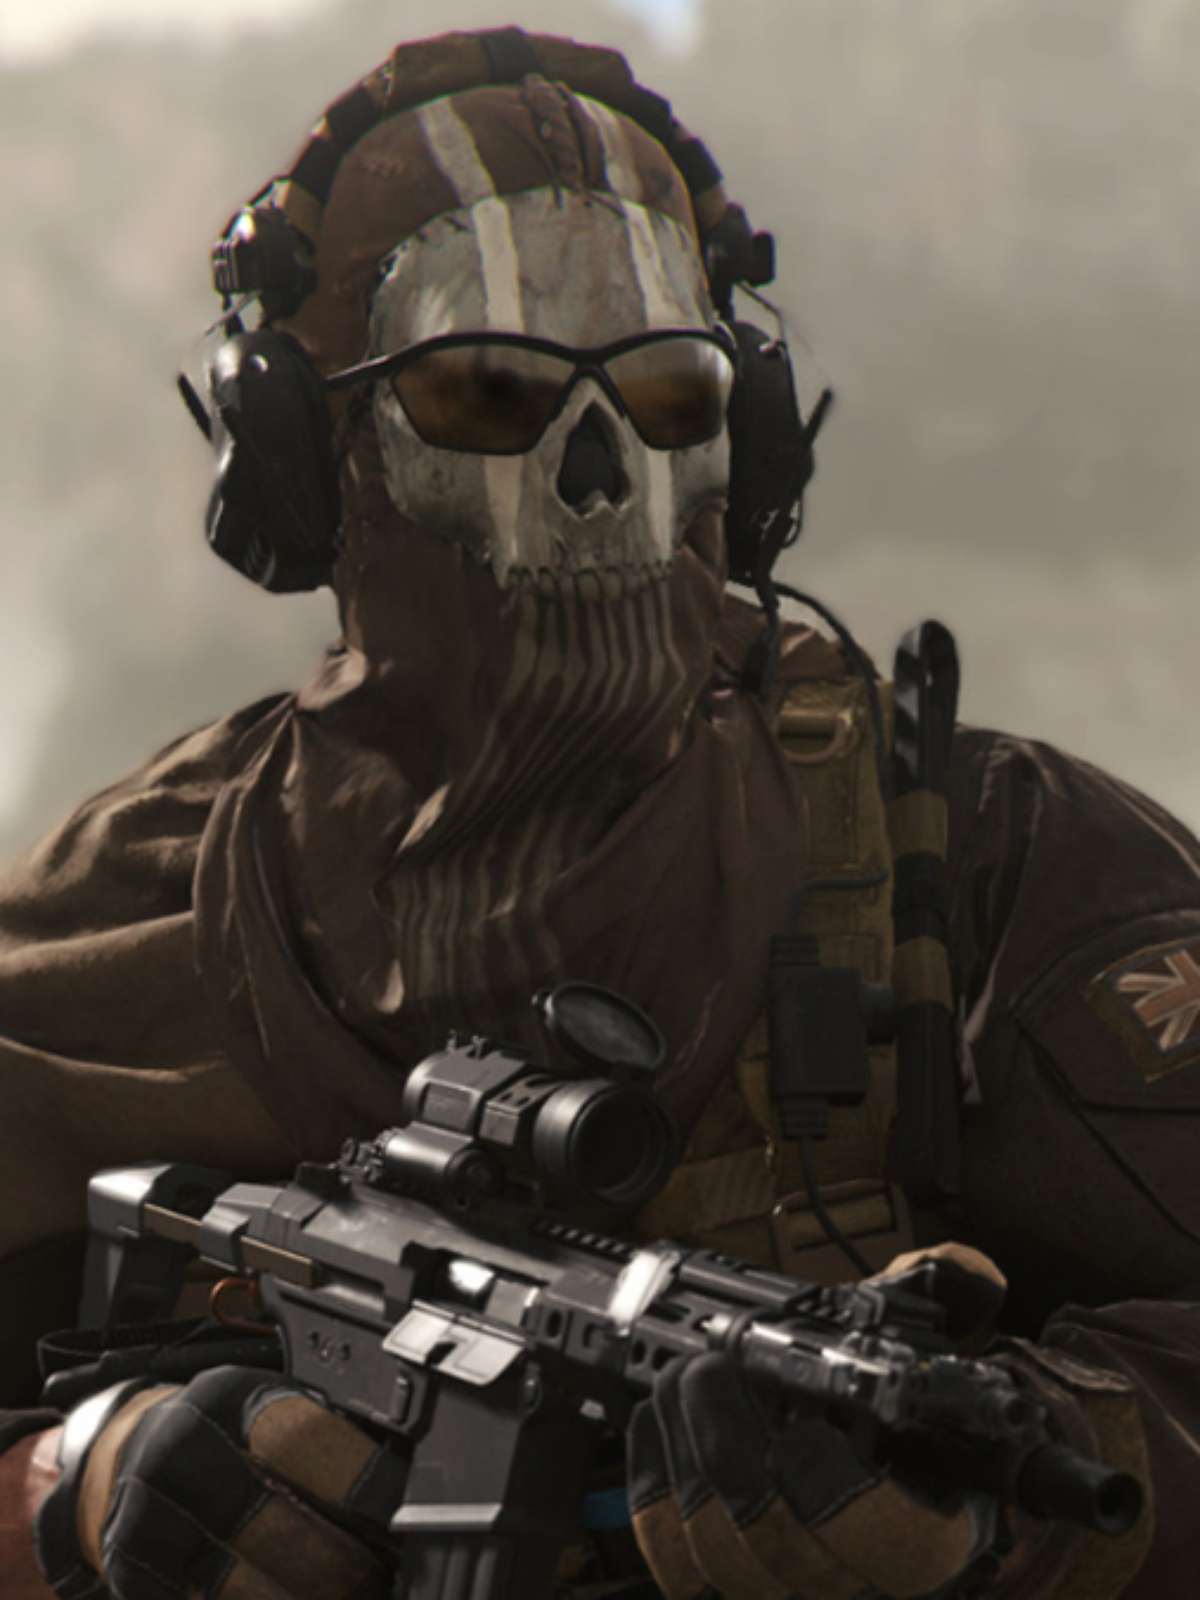 Ghost CoD: Conheça a história do operador de Call of Duty